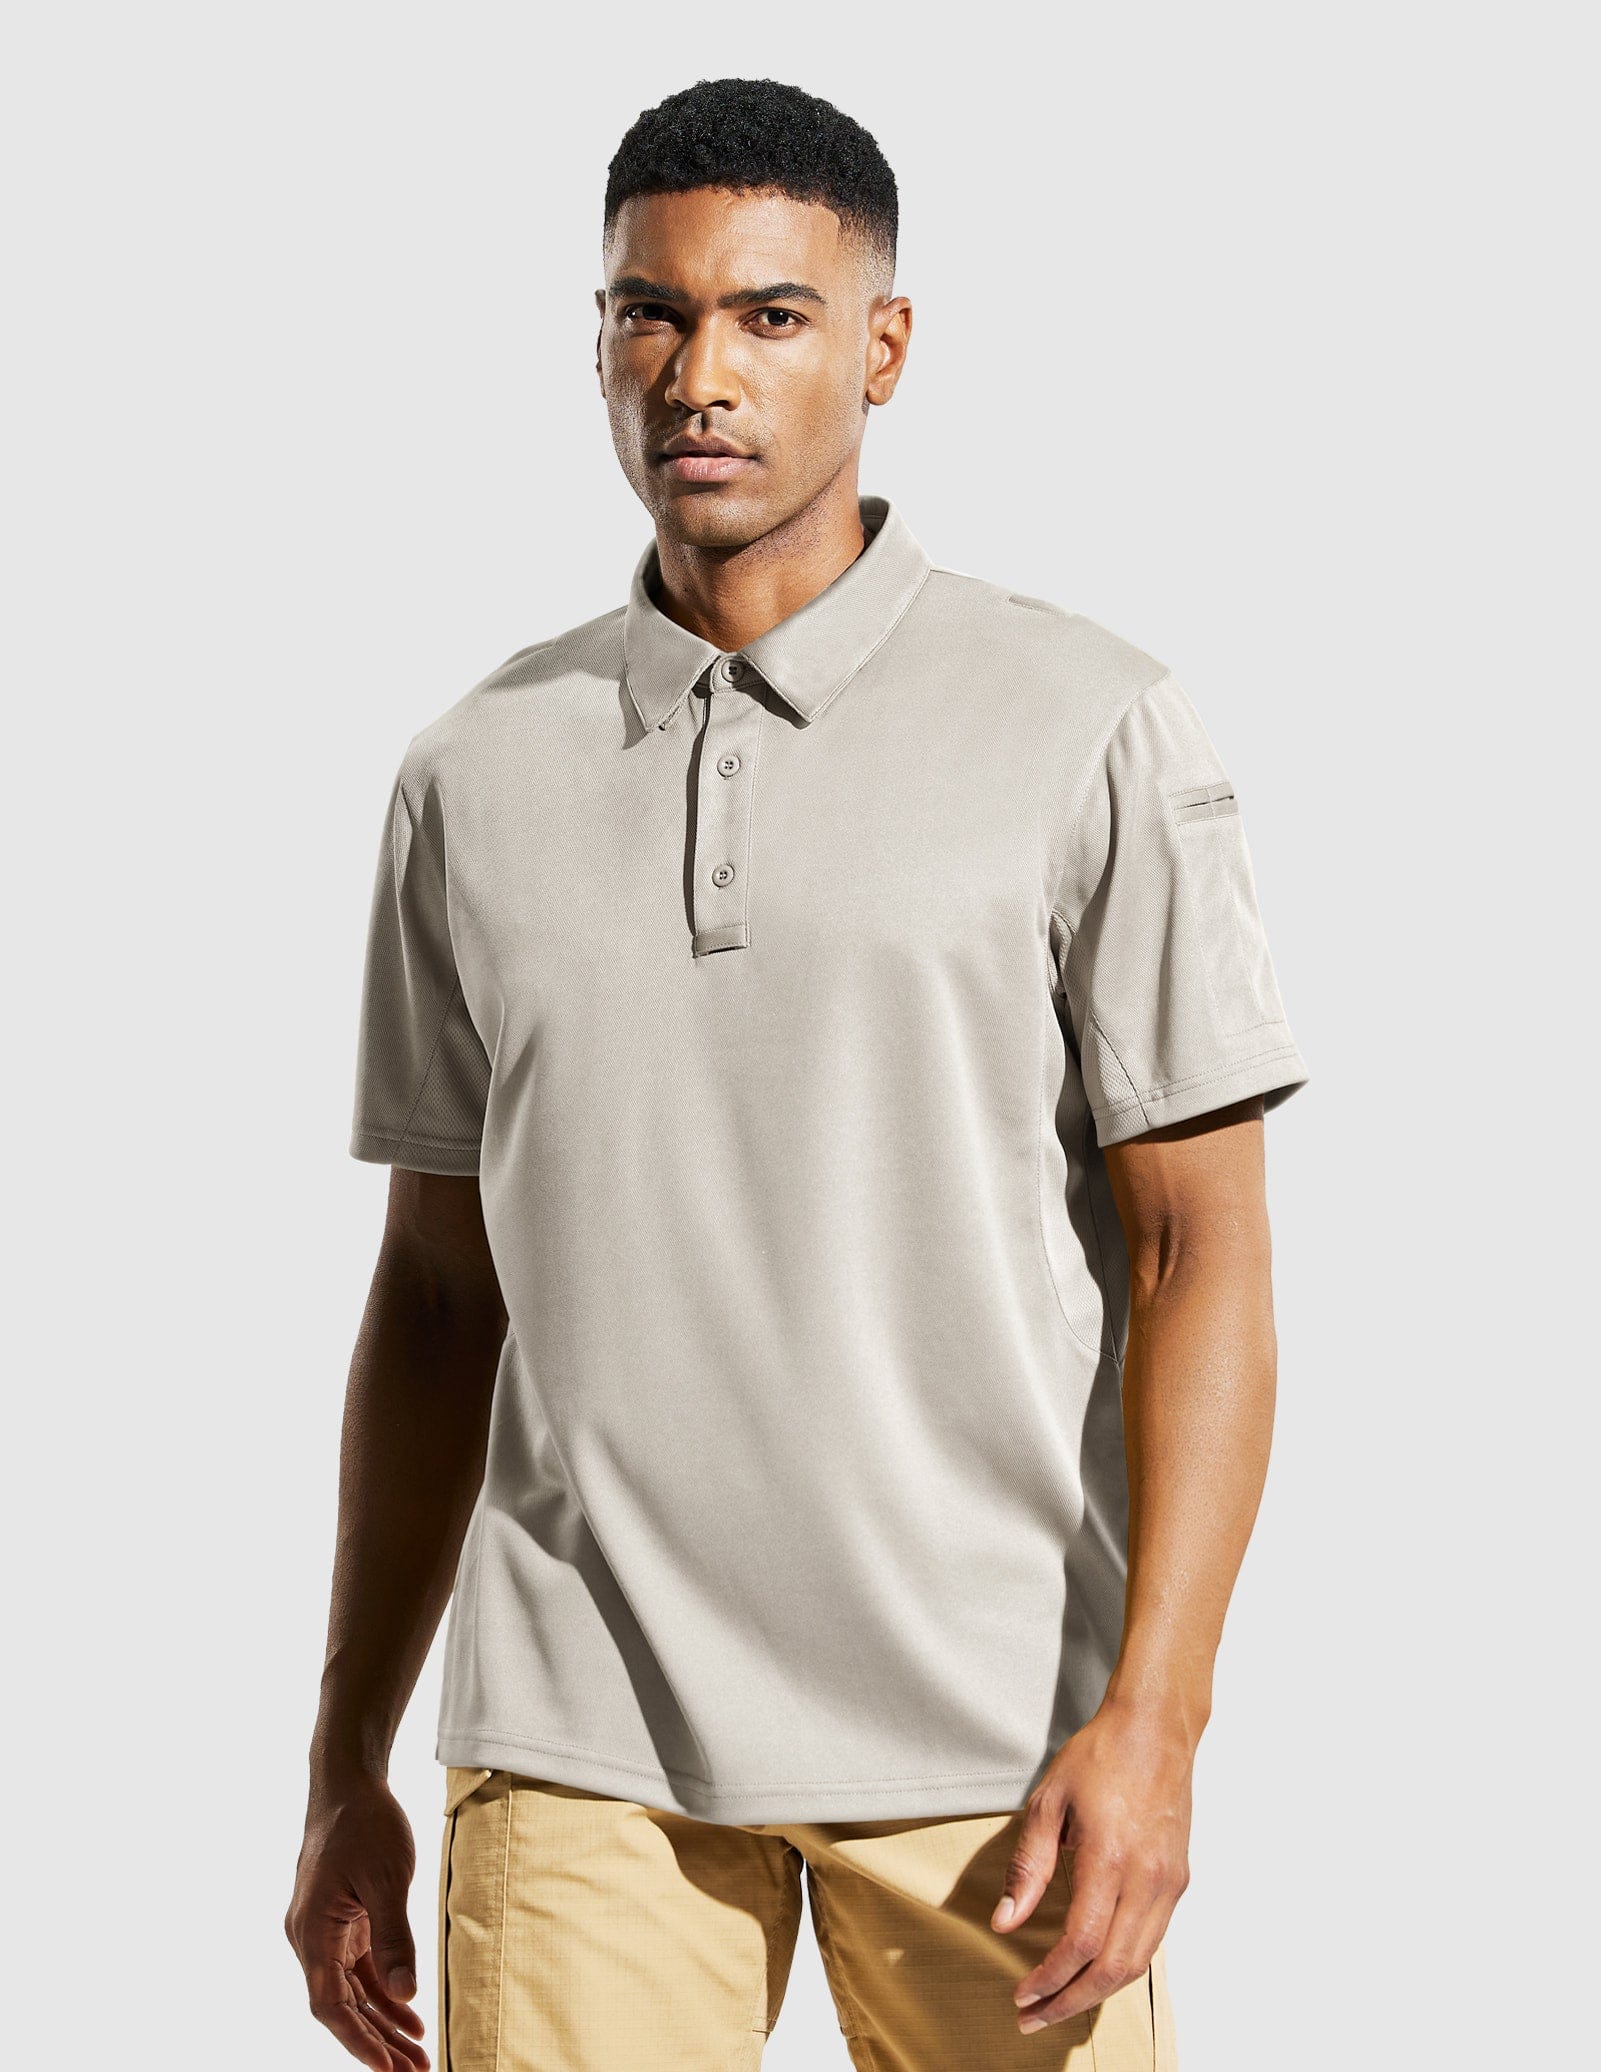 Men's Tactical Polo Shirts Outdoor Performance Collared Shirt Men Polo Light Khaki / S MIER